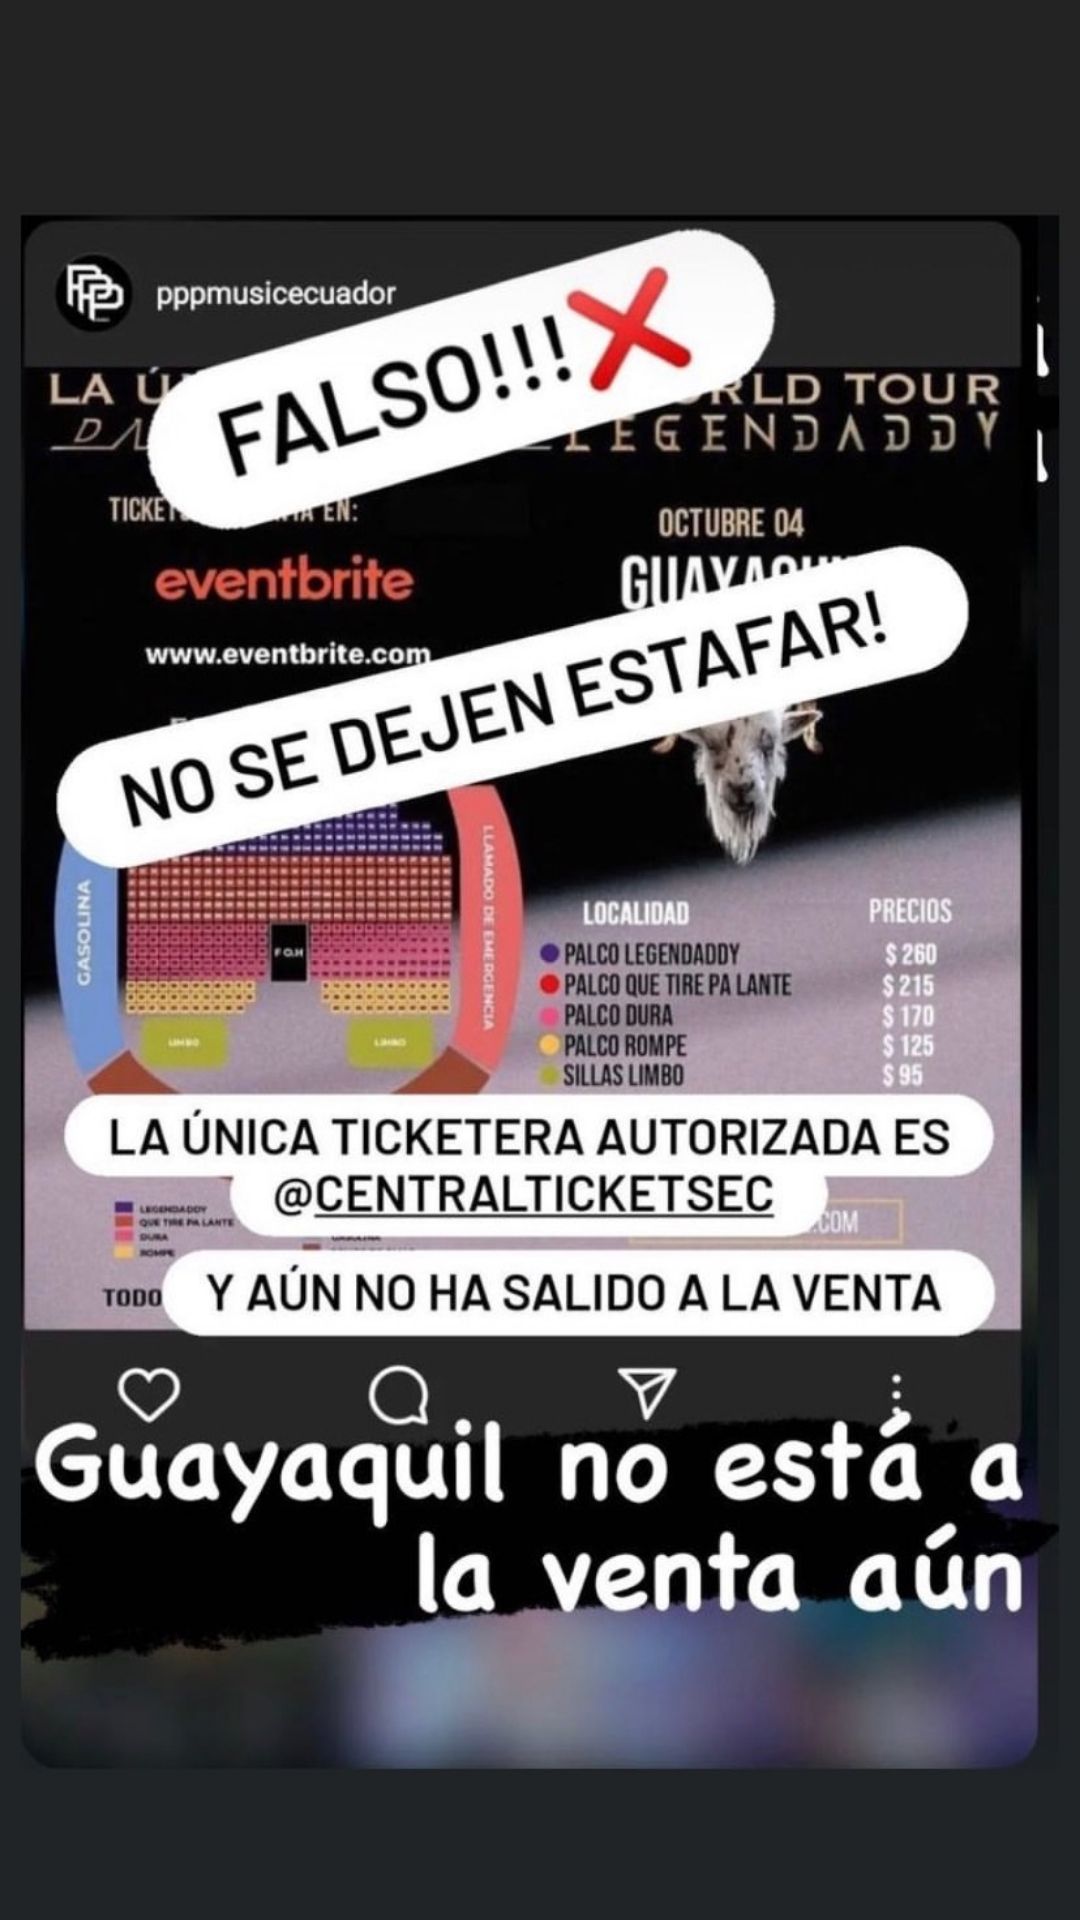 Daddy Yankee Guayaquil Central Tickets Nueva Fecha de Venta (3)